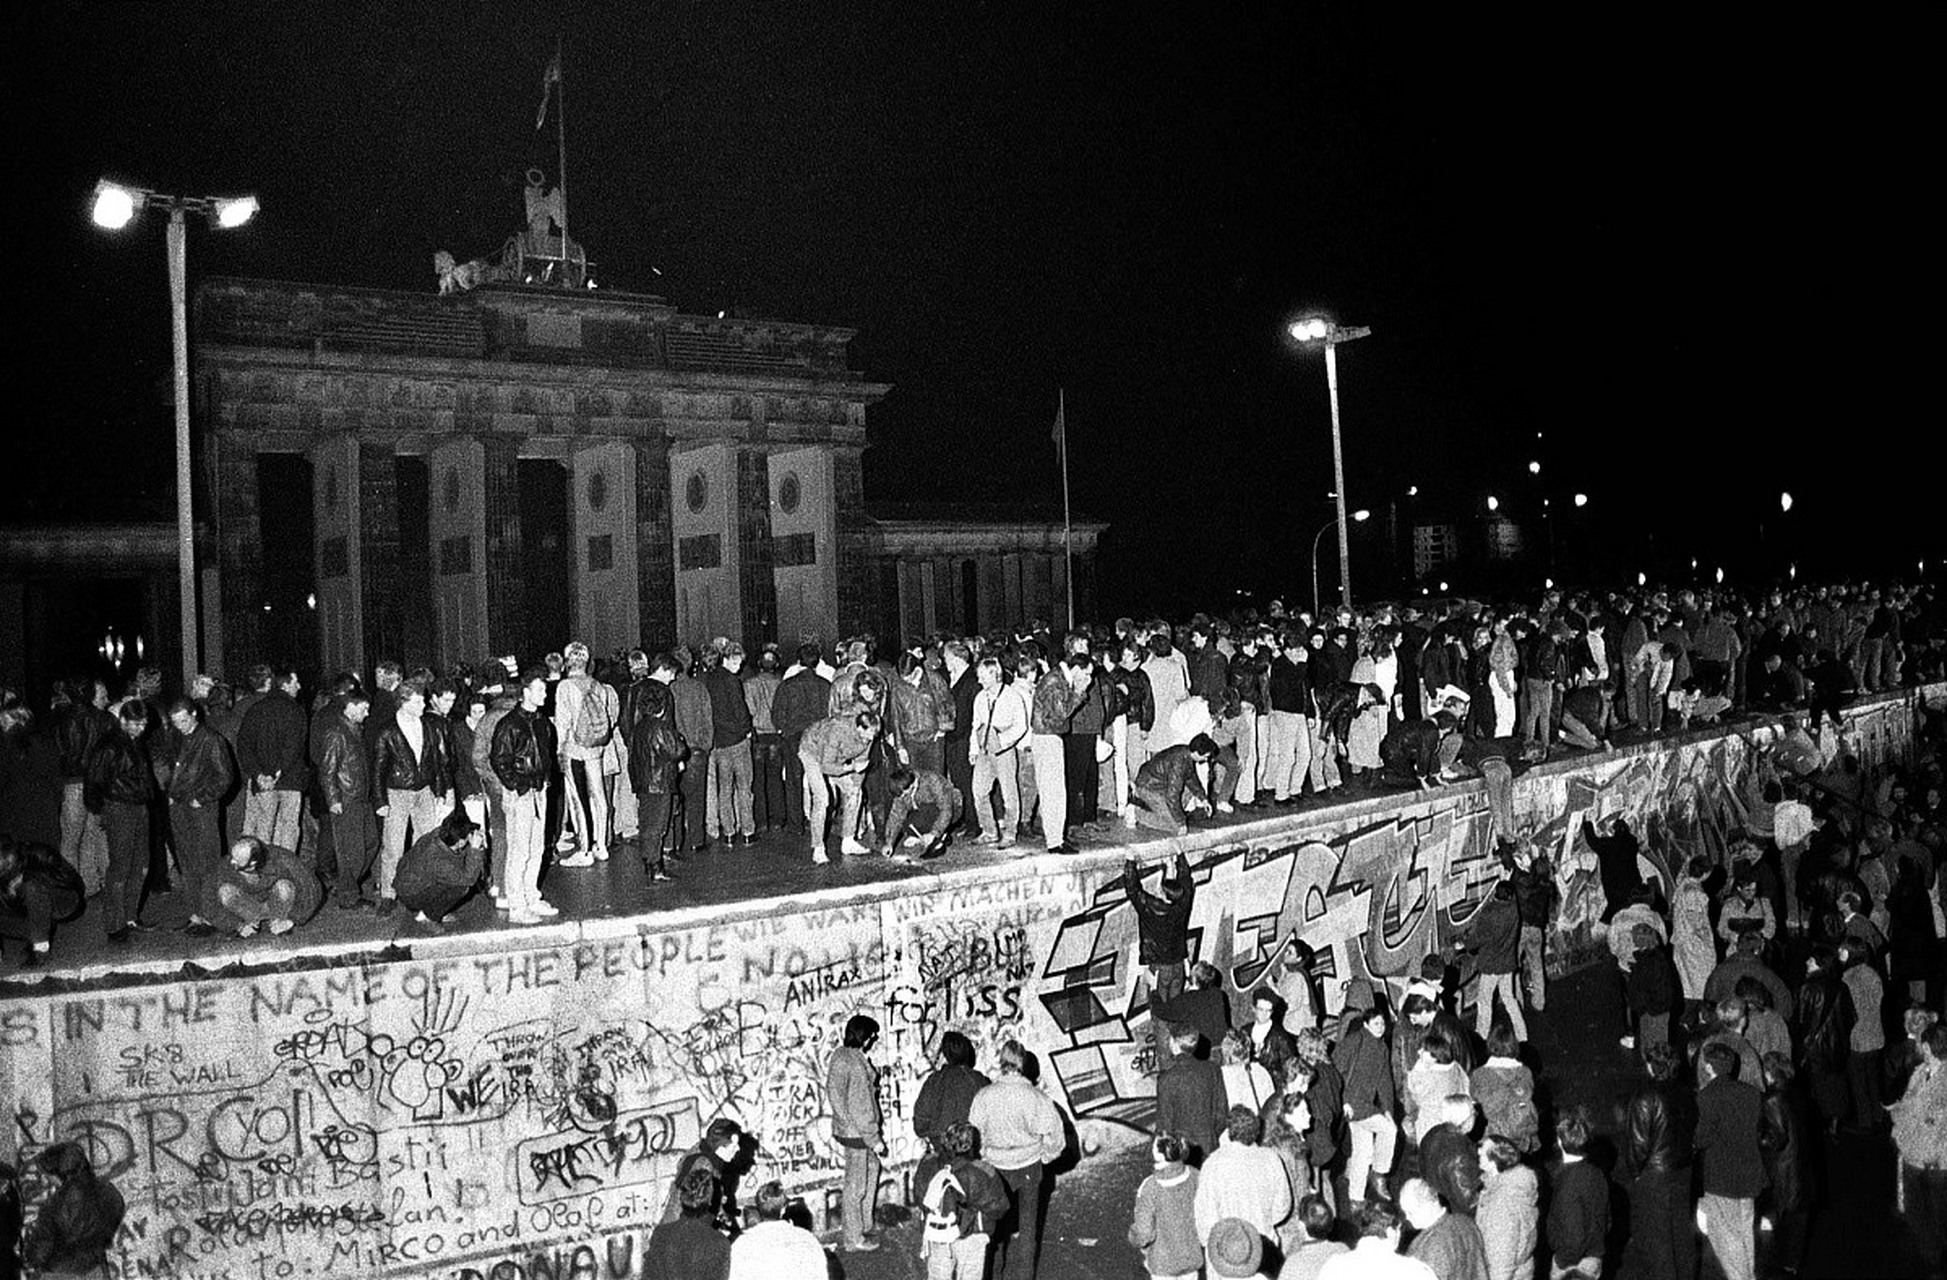 1989年,柏林墙的倒塌成为了世界历史上的一件大事件,这个事件背后有一